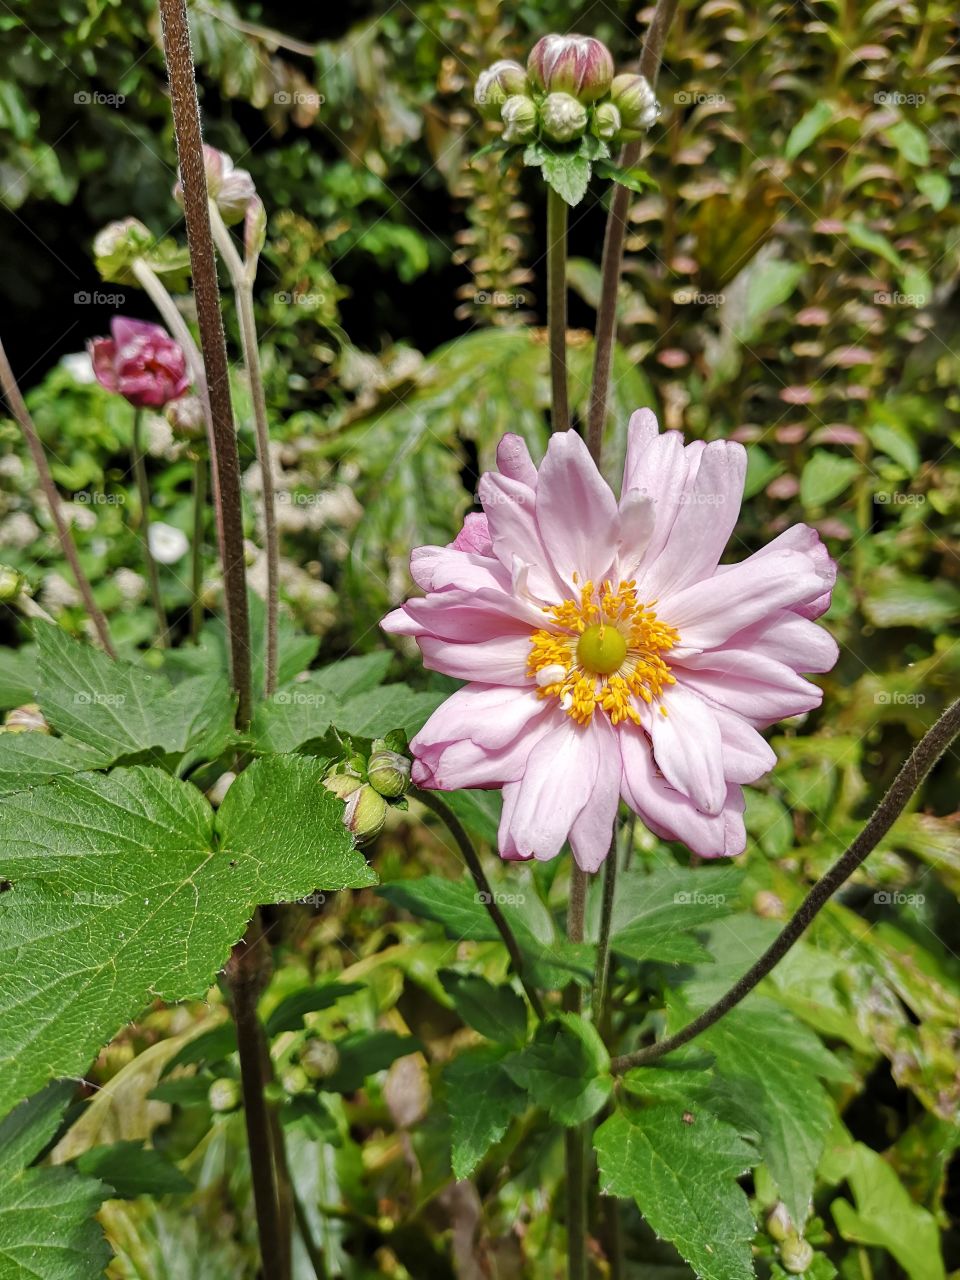 A Flower in Bloom